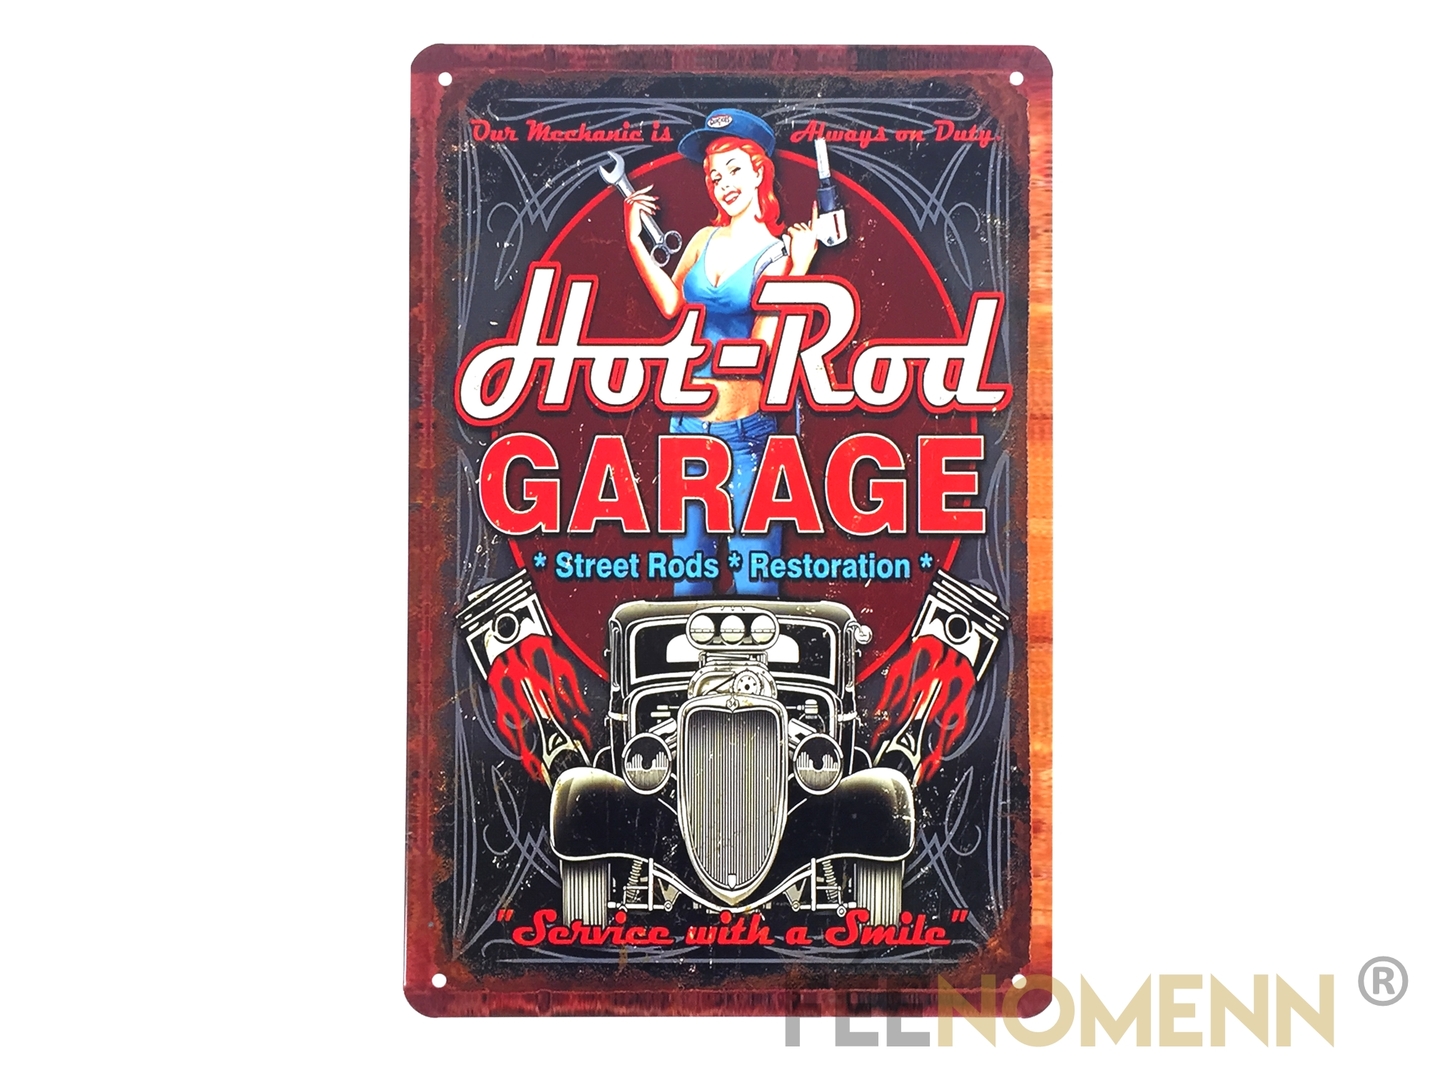 Plaque Métal Déco Vintage Hot Rod Garage 20x30cm DÉco Accessoiresplaques Metal FÉenomenn 